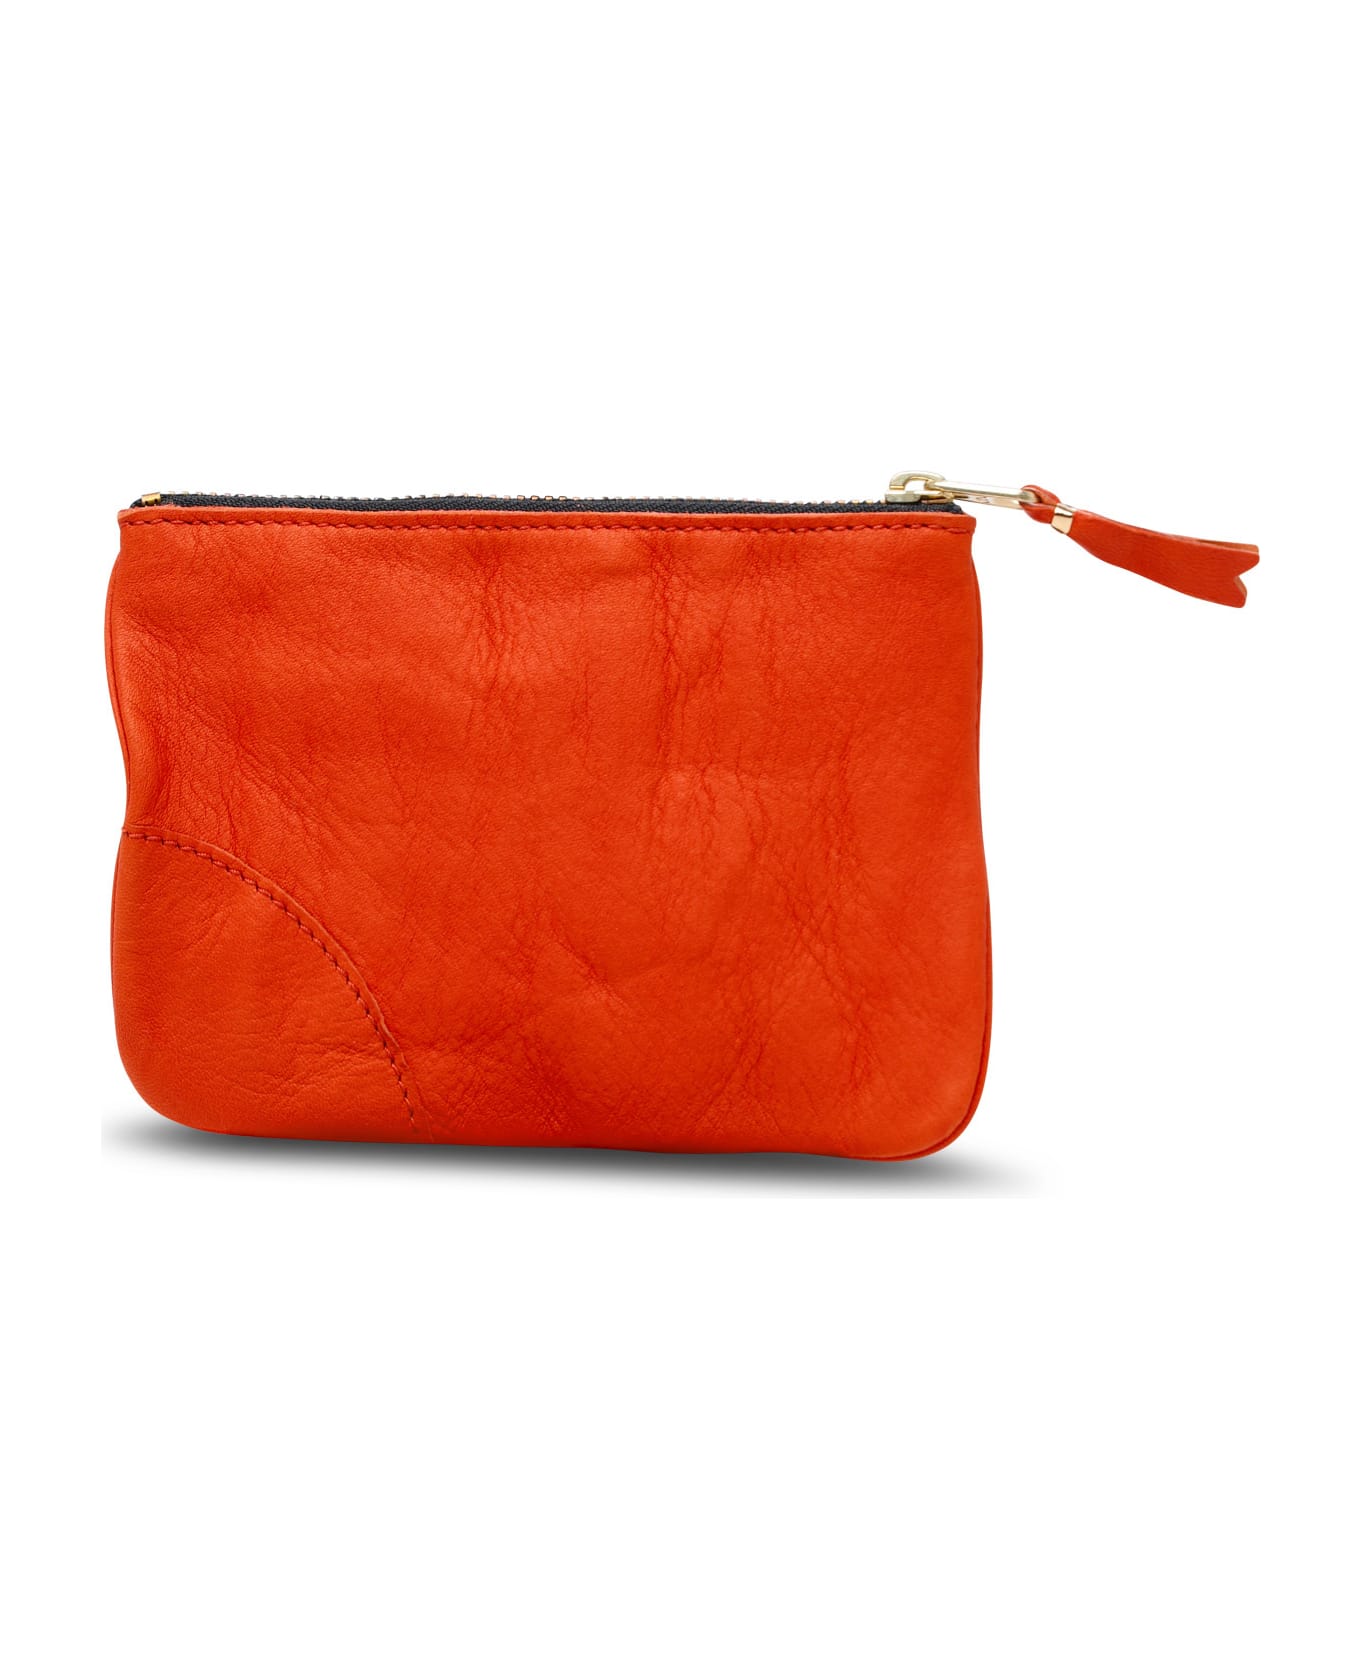 Comme des Garçons Wallet Orange Leather Card Holder - Orange